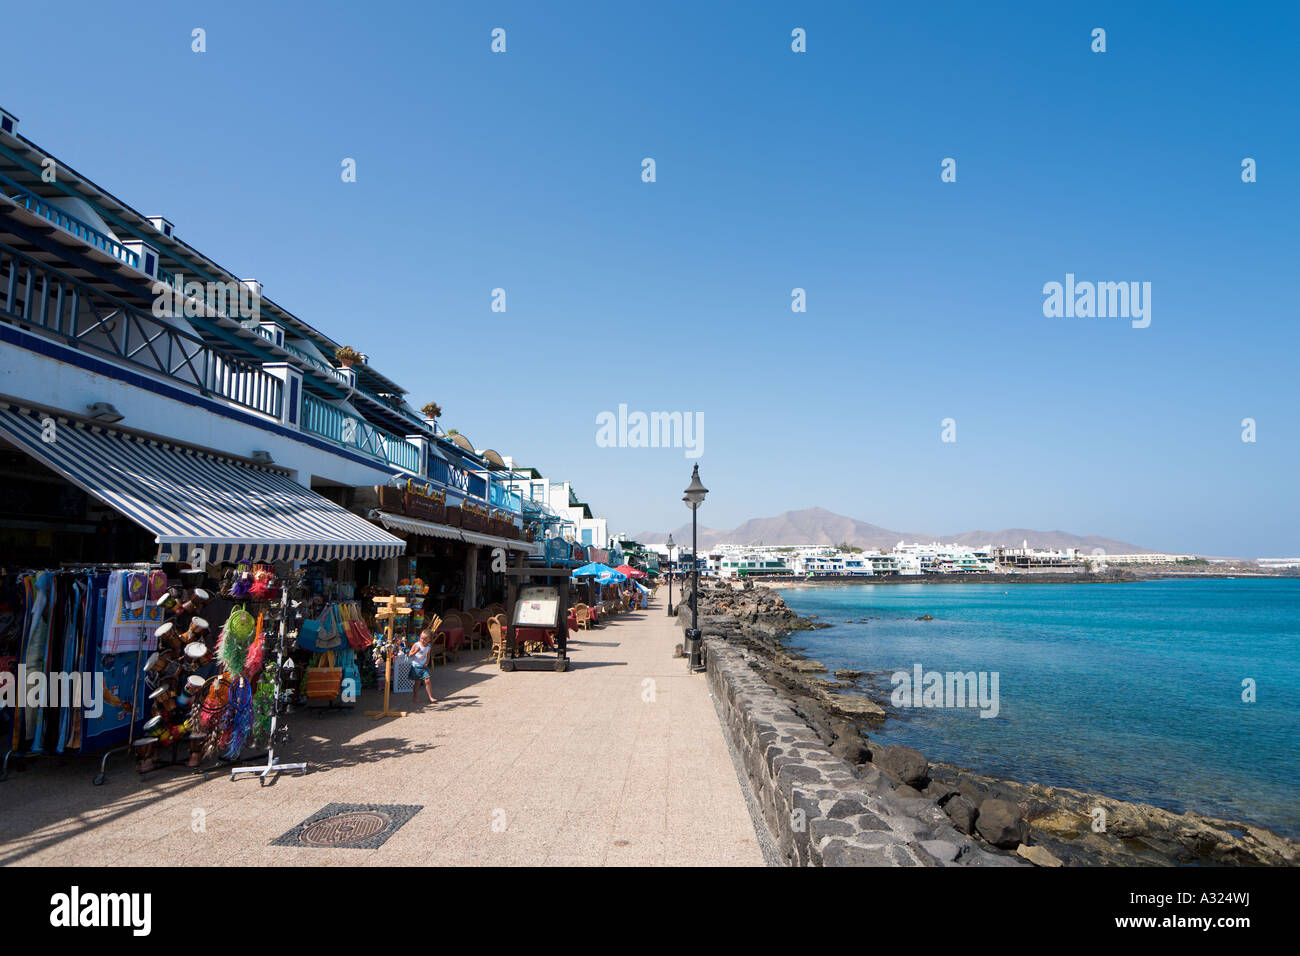 La promenade et des boutiques dans le centre de la station balnéaire, Playa Blanca, Lanzarote, îles Canaries, Espagne Banque D'Images